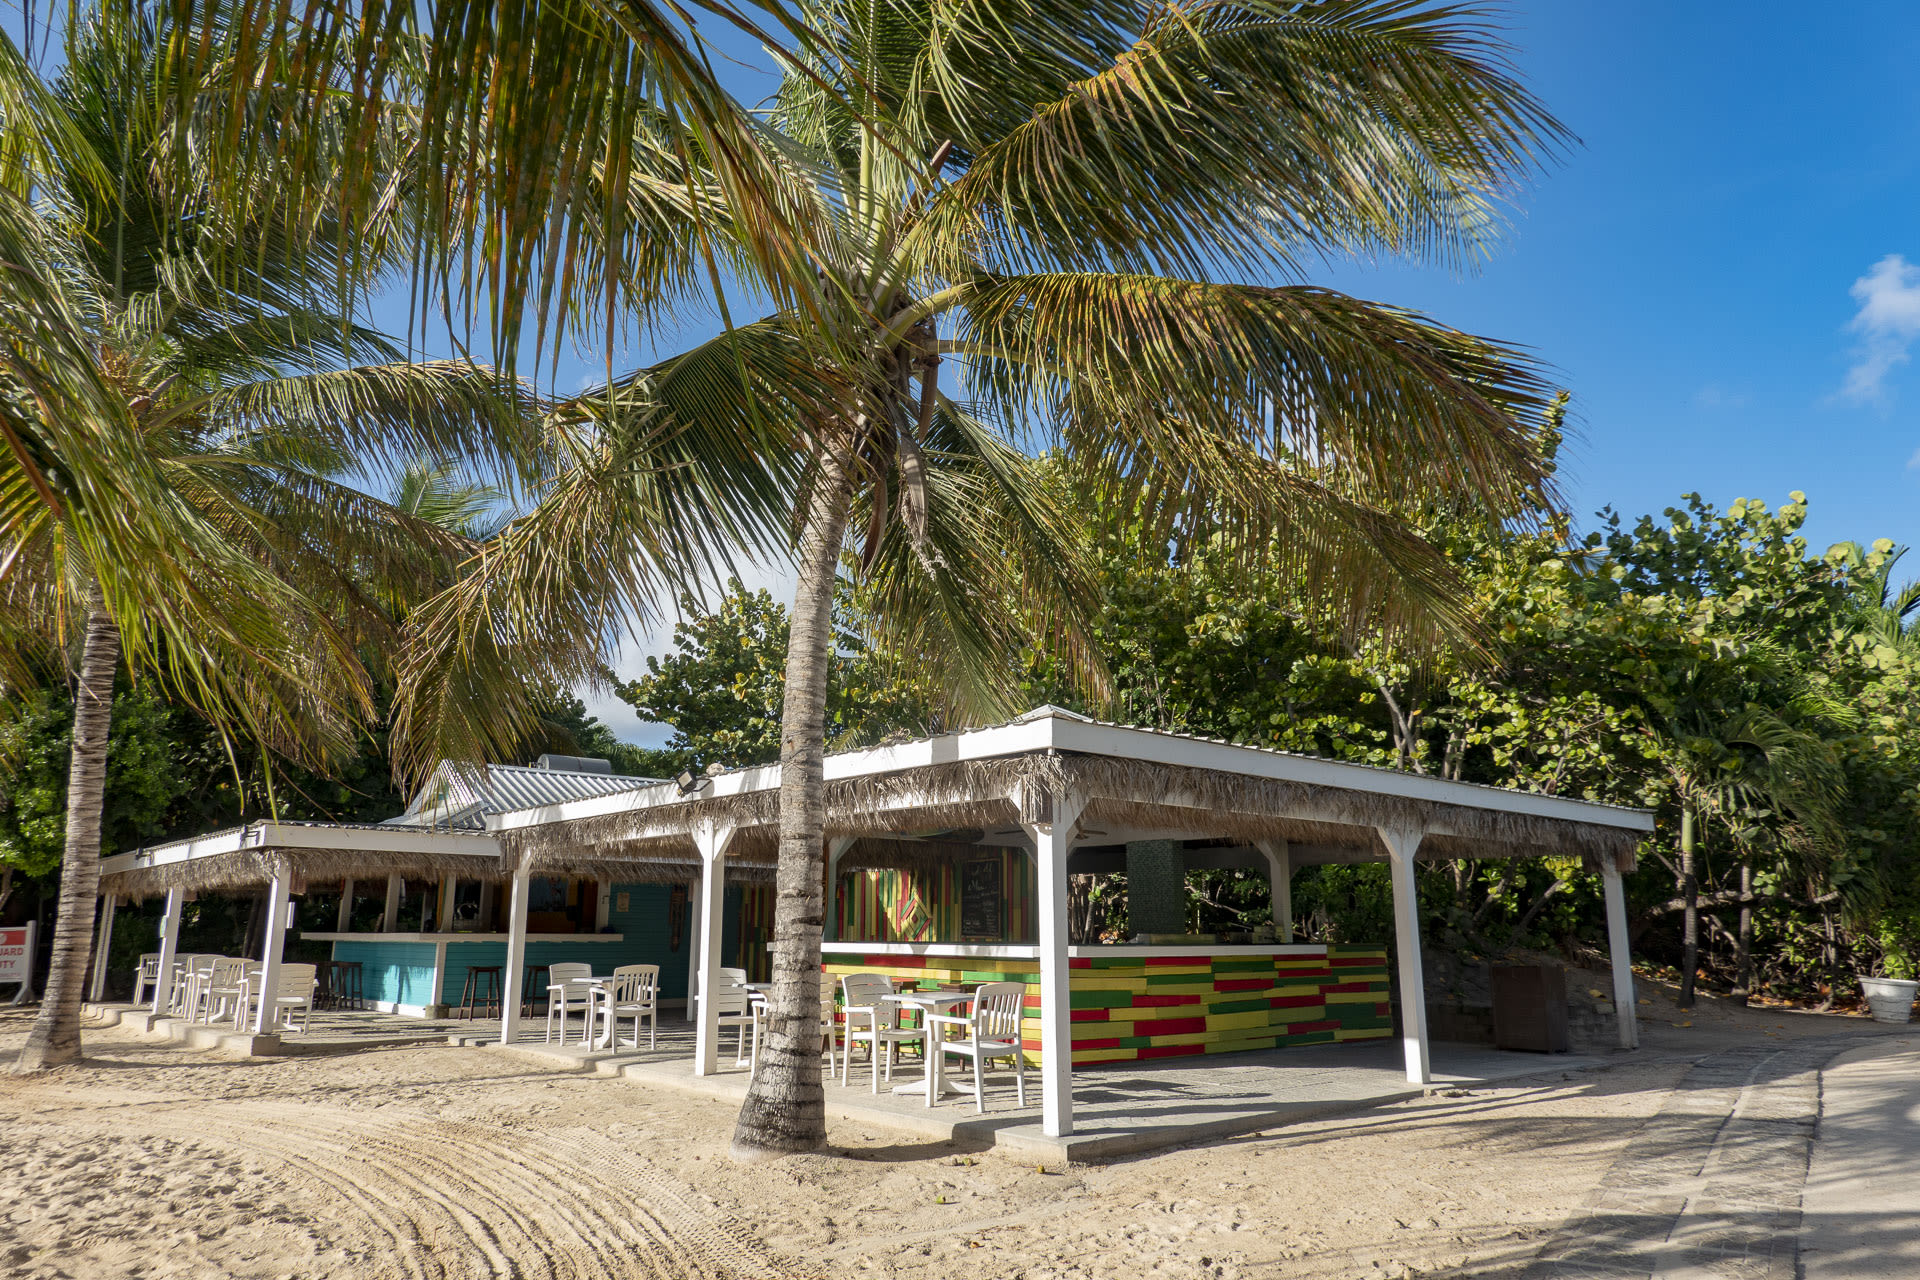 A beach bar in Antigua